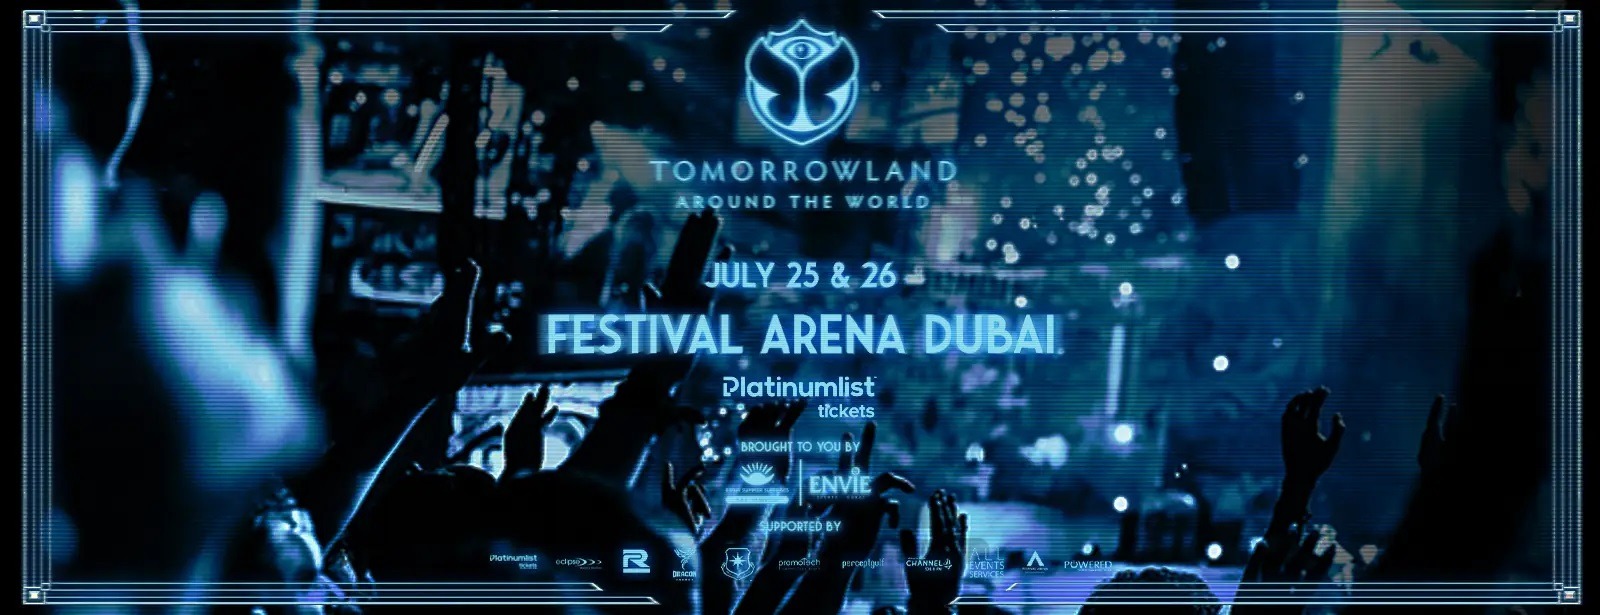 Tomorrowland: Digital edition - Coming Soon in UAE